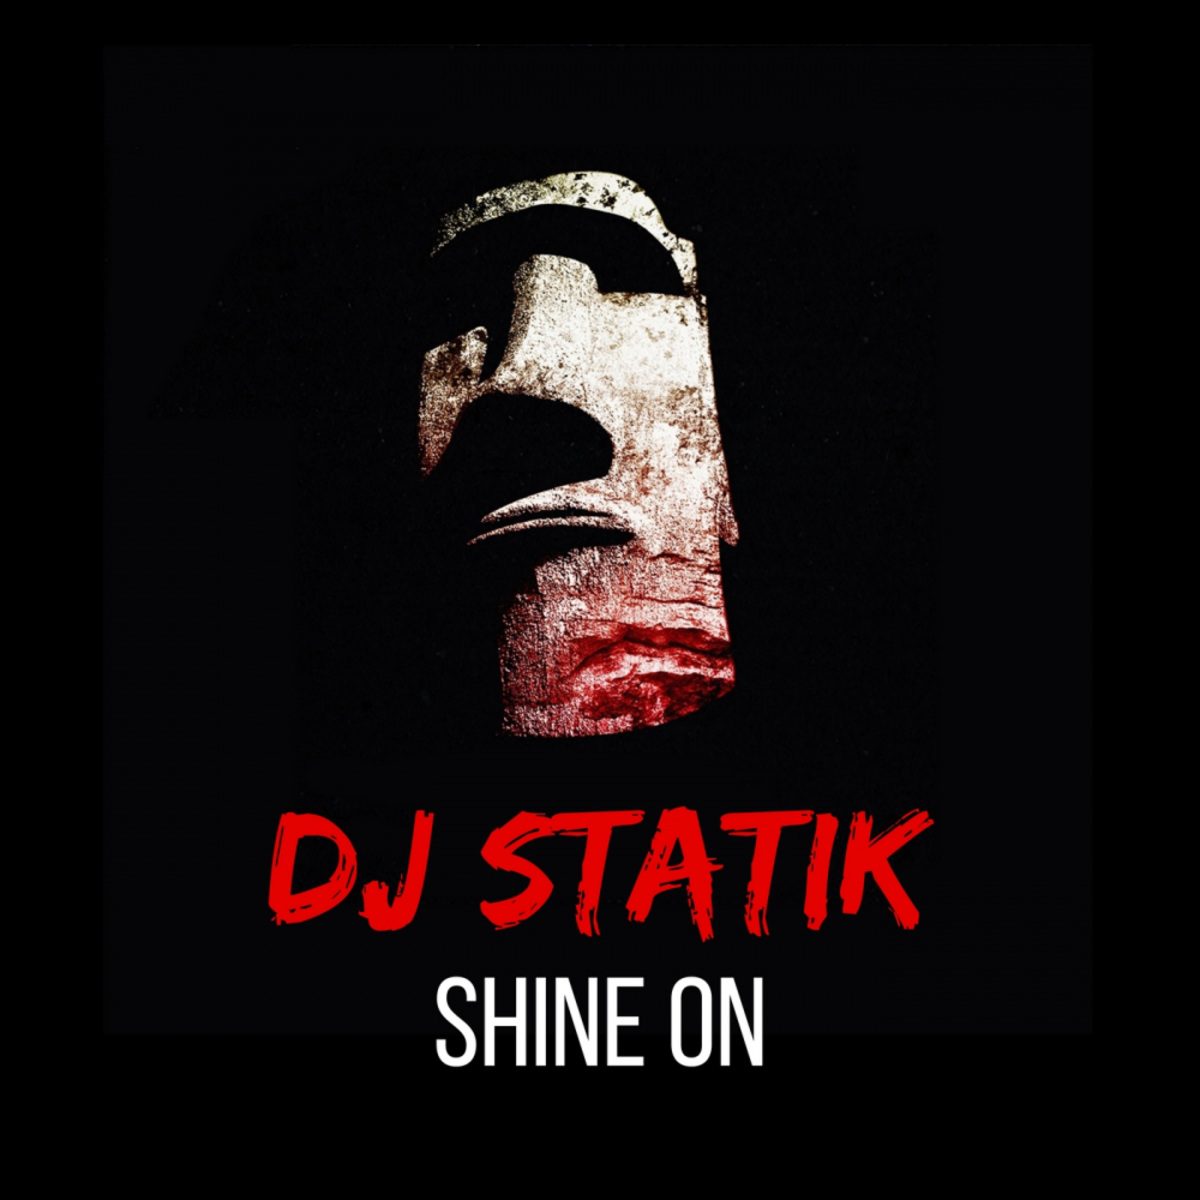 Dj Statik - Shine On / Blockhead Recordings